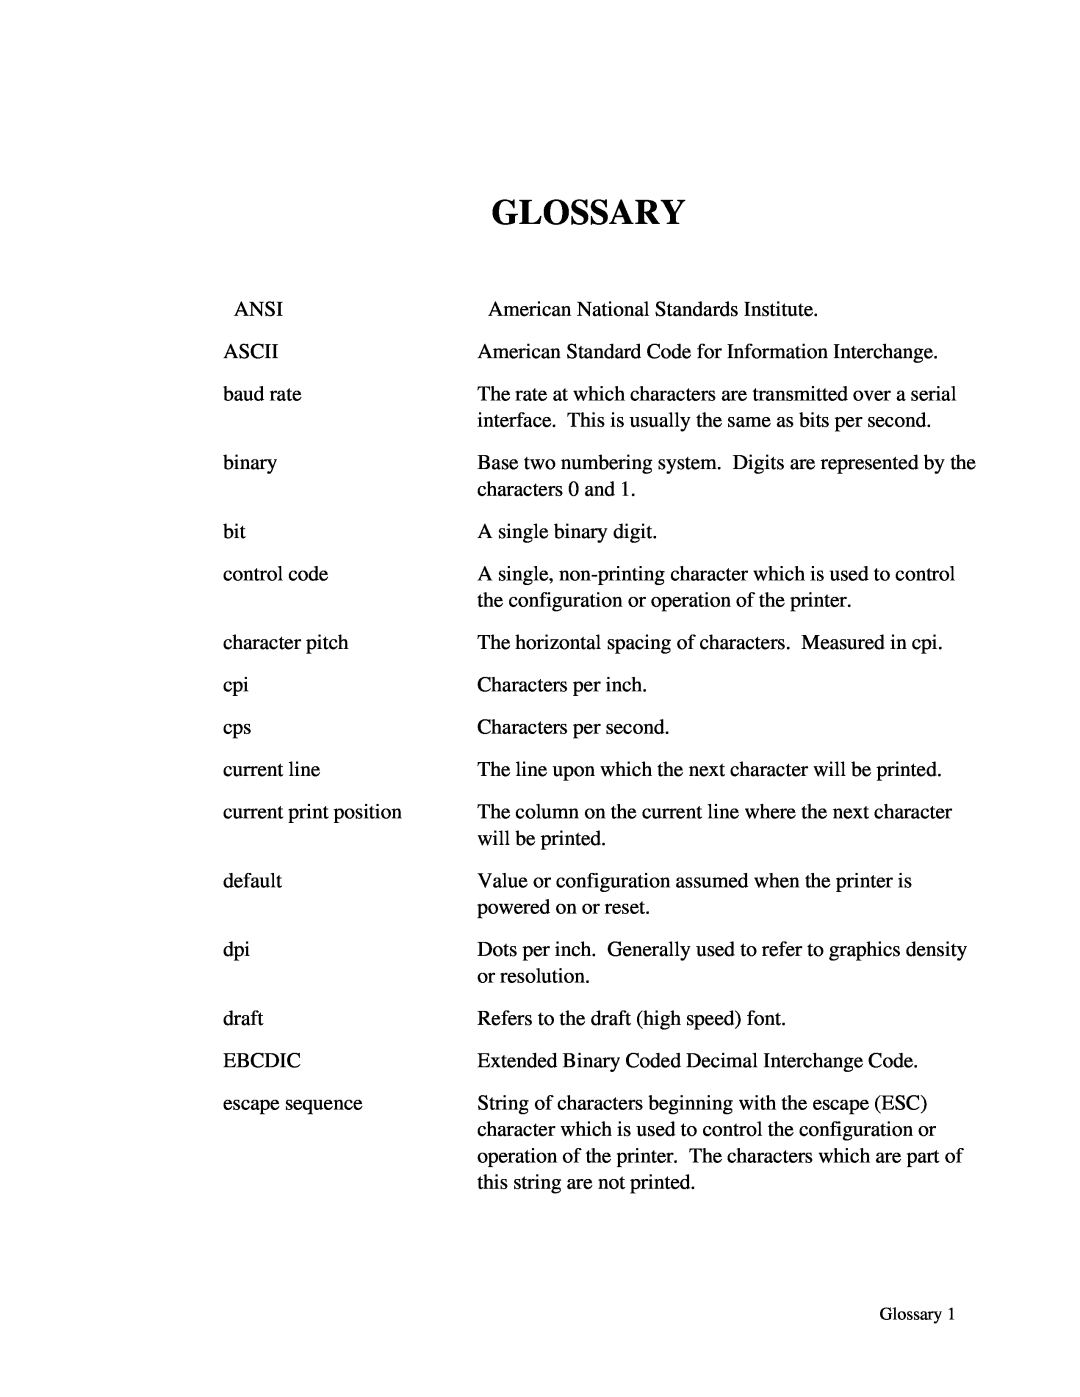 Printek 4503, 4300, 4500 manual Glossary 